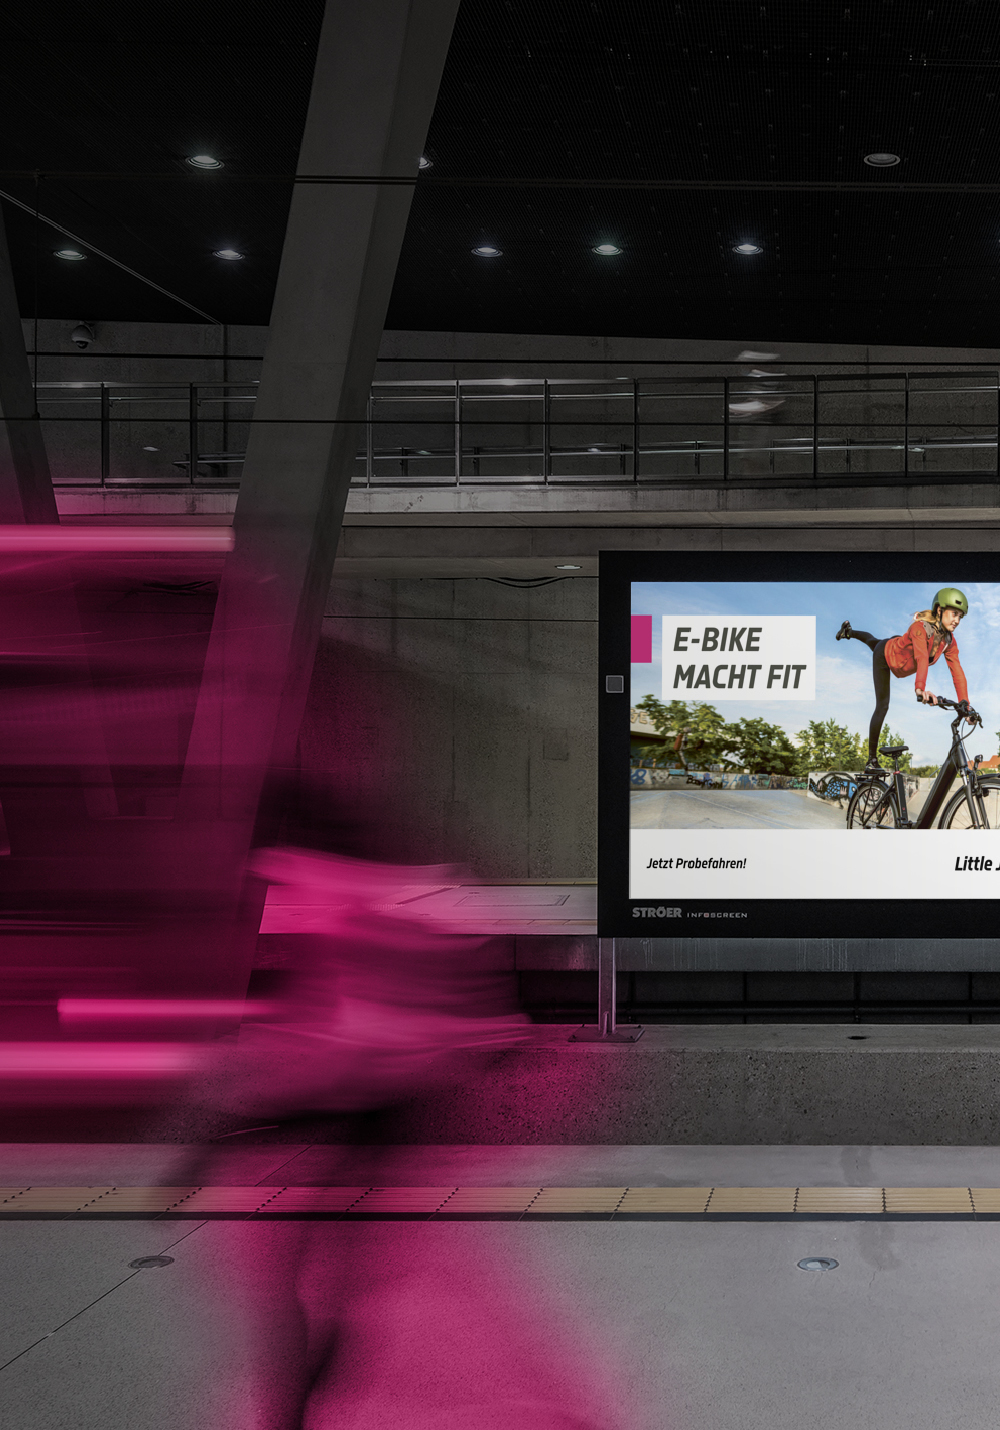 Werbeplakat von Little John Bikes in Großstadt an einem Bahnhof, dynamische Schrift, im Vordergrund verwischte Lichter von einem abfahrenden Zug